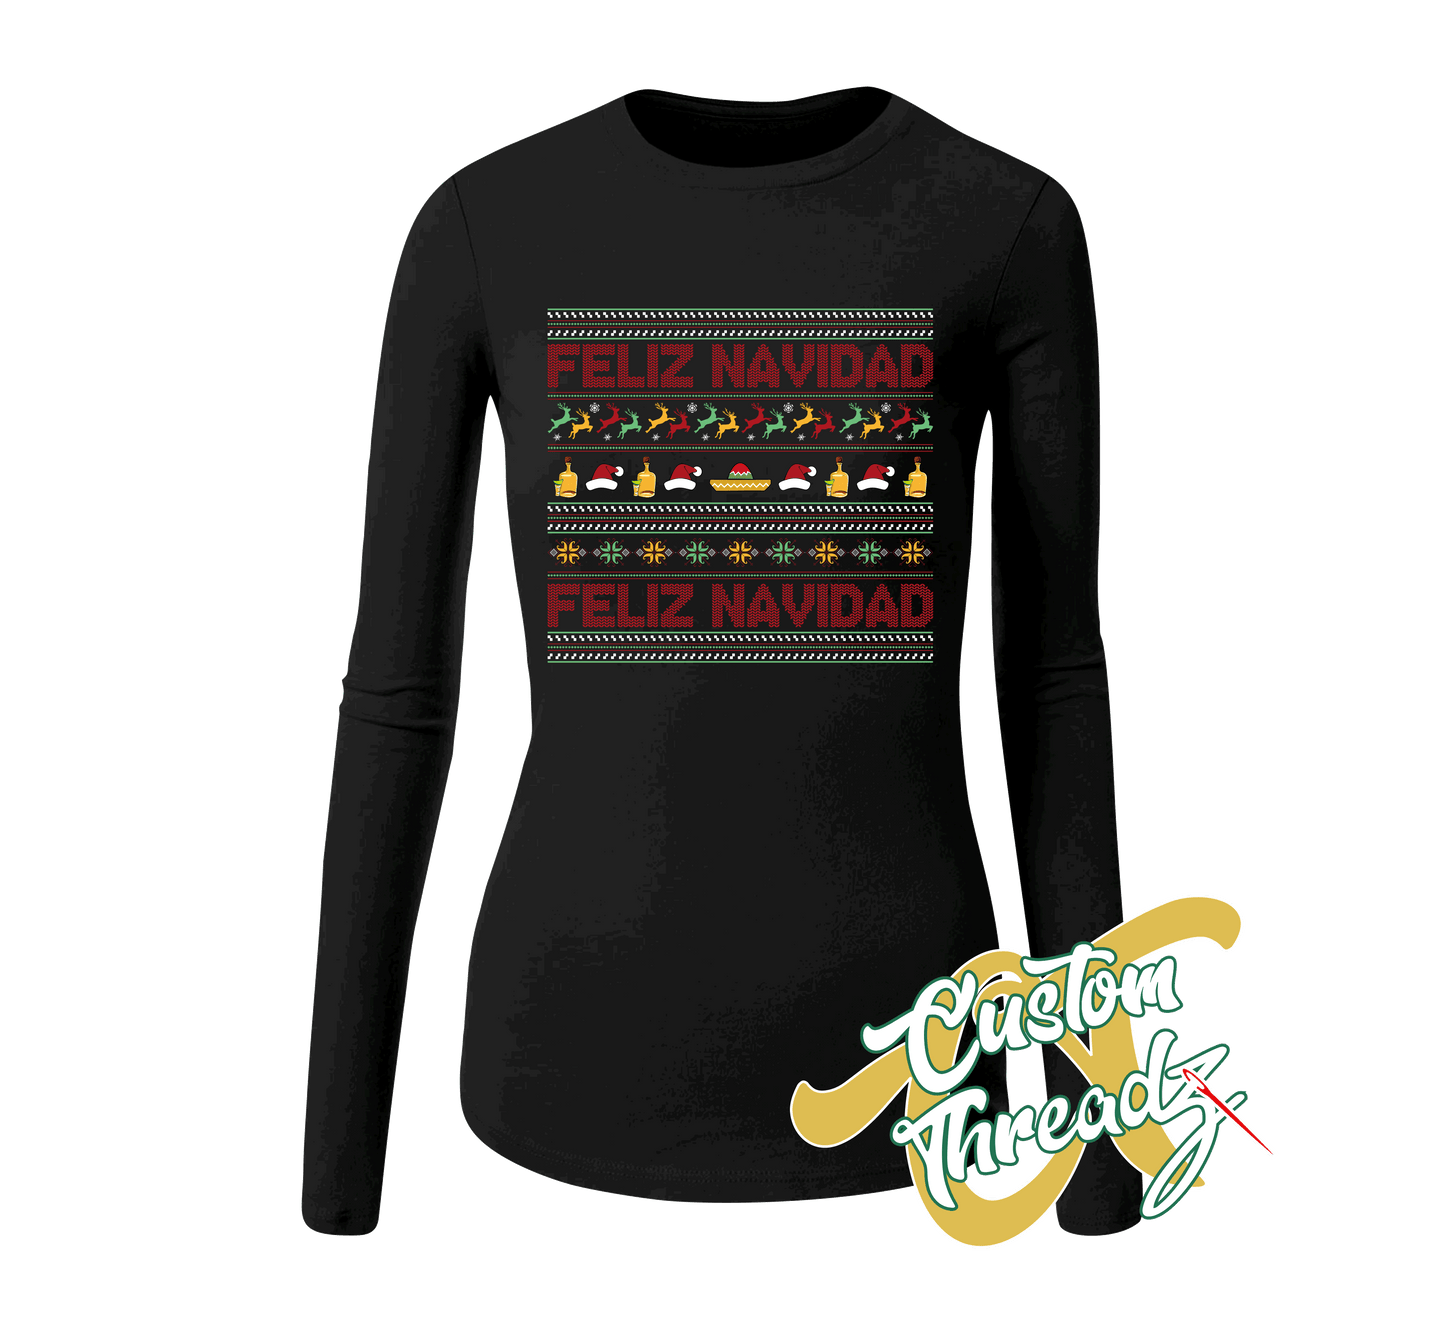 black womens long sleeve tee with feliz navidad christmas sweater style DTG printed design